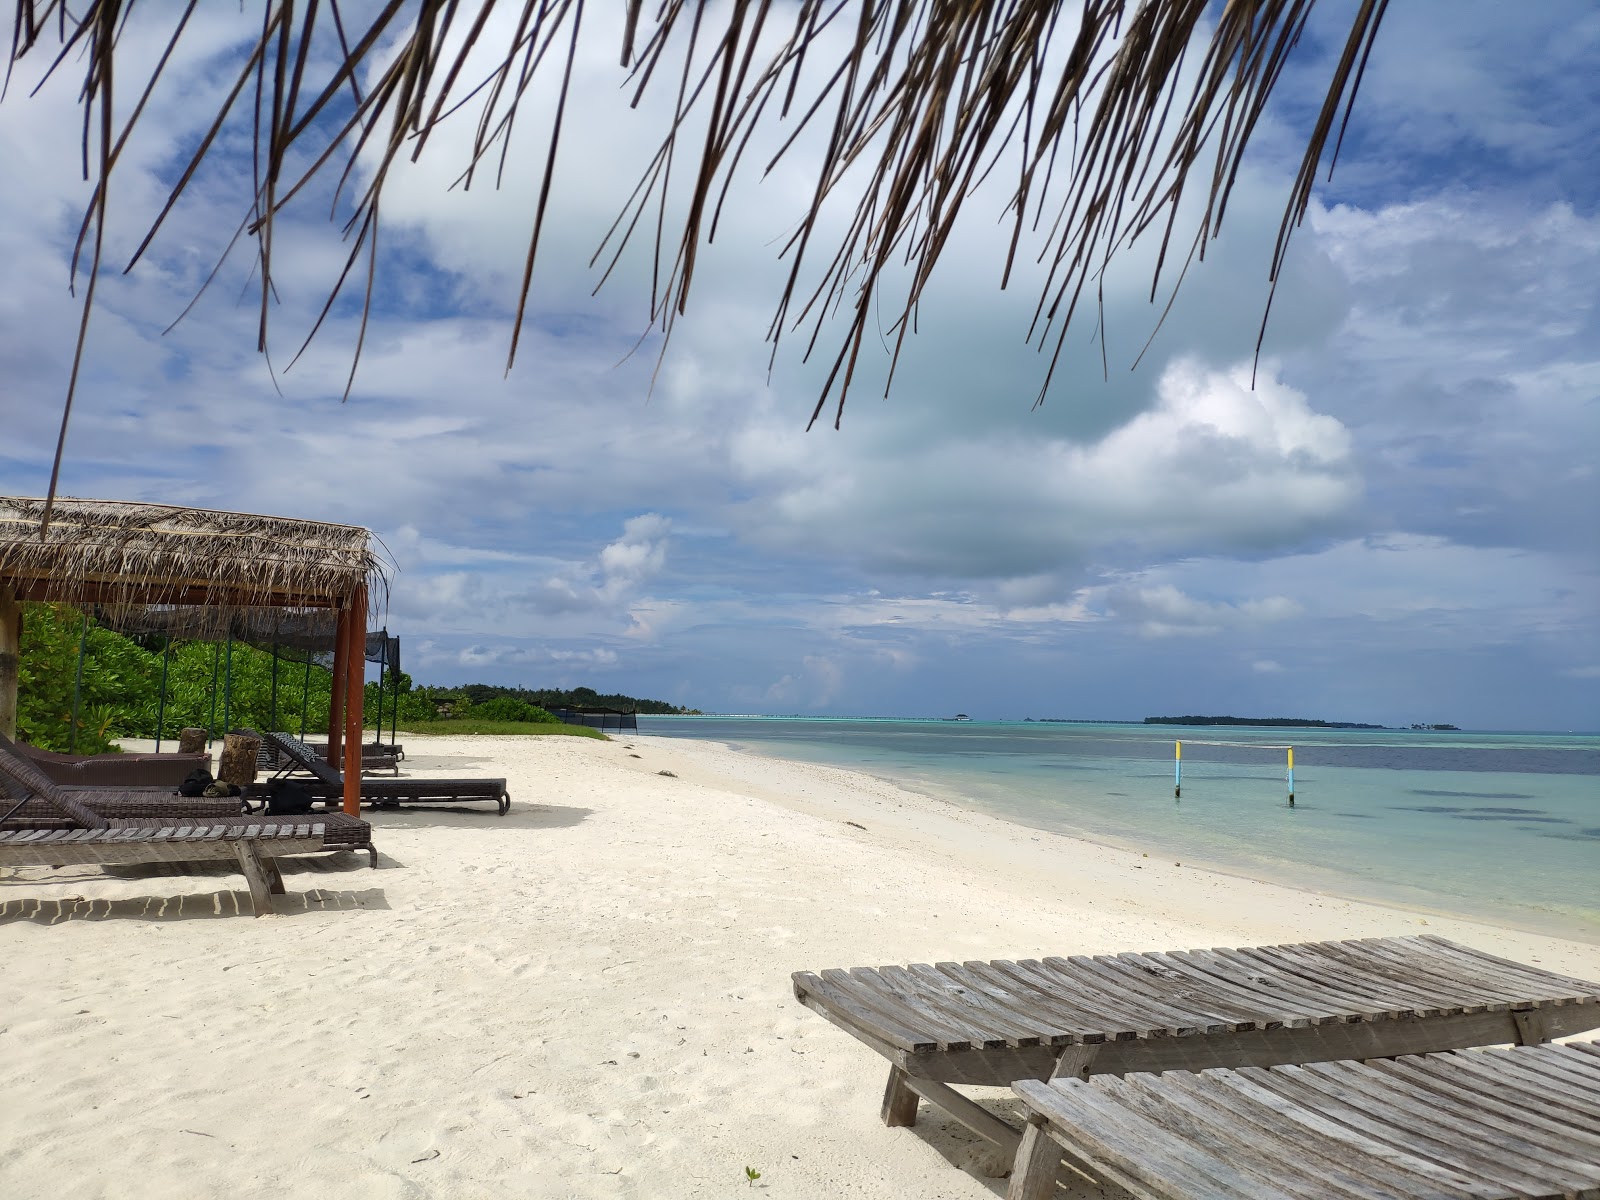 Foto de Guest Beach Maamigili - lugar popular entre los conocedores del relax